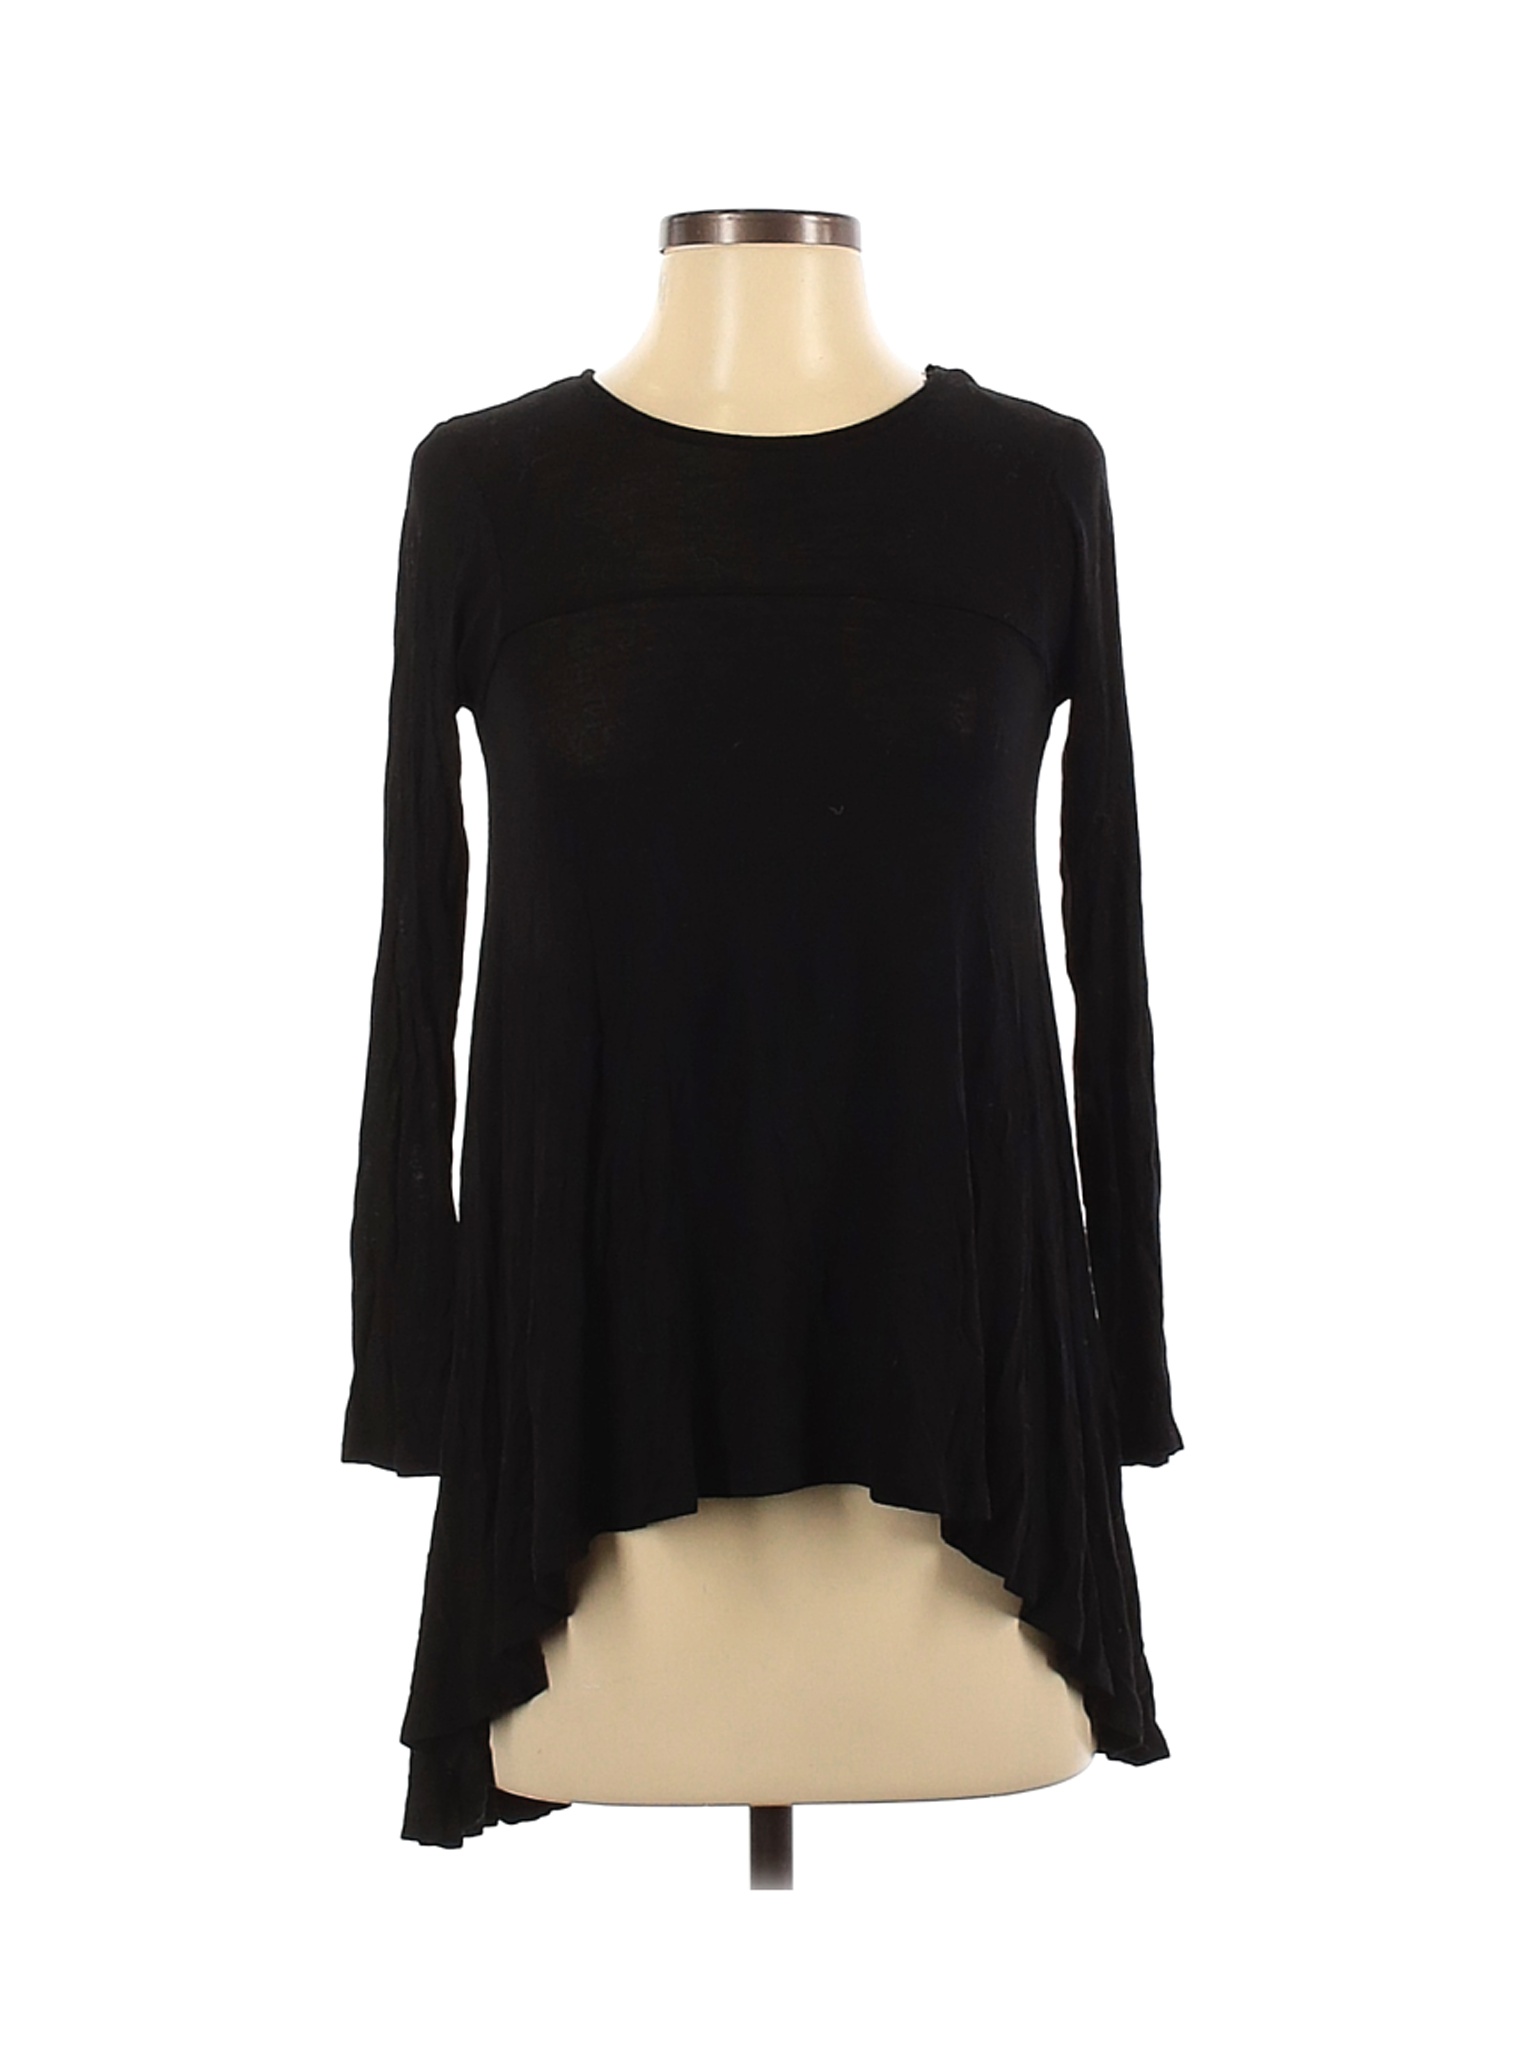 Zara Women Black Long Sleeve T-Shirt S | eBay